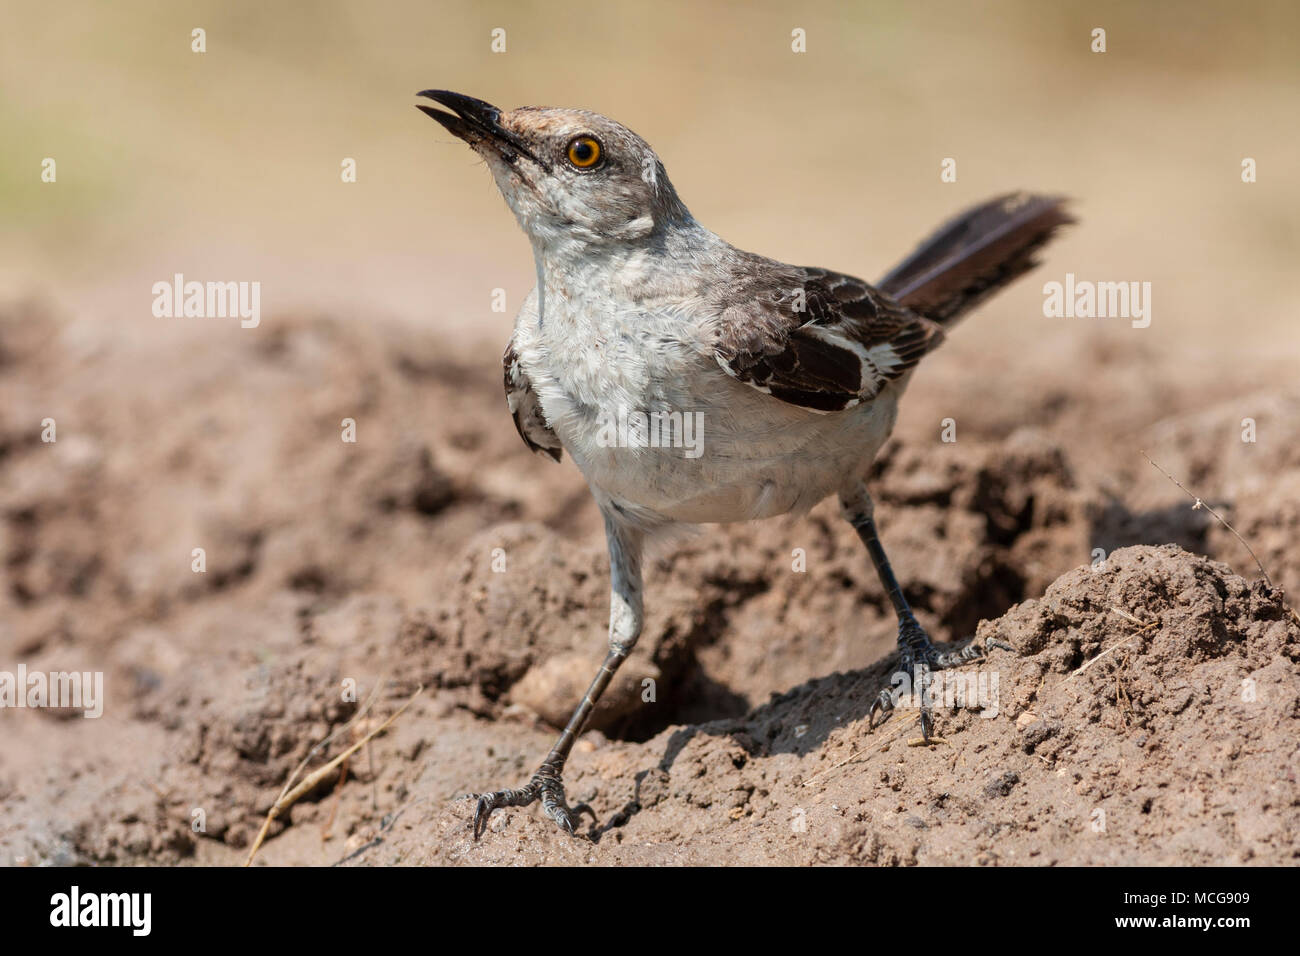 Northern Mockingbird, Mimus polyglottos, der einzige Mockingbird gewöhnlich in Nordamerika gefunden, auf der Suche nach Wasser und Entlastung von der Sommerhitze. Stockfoto